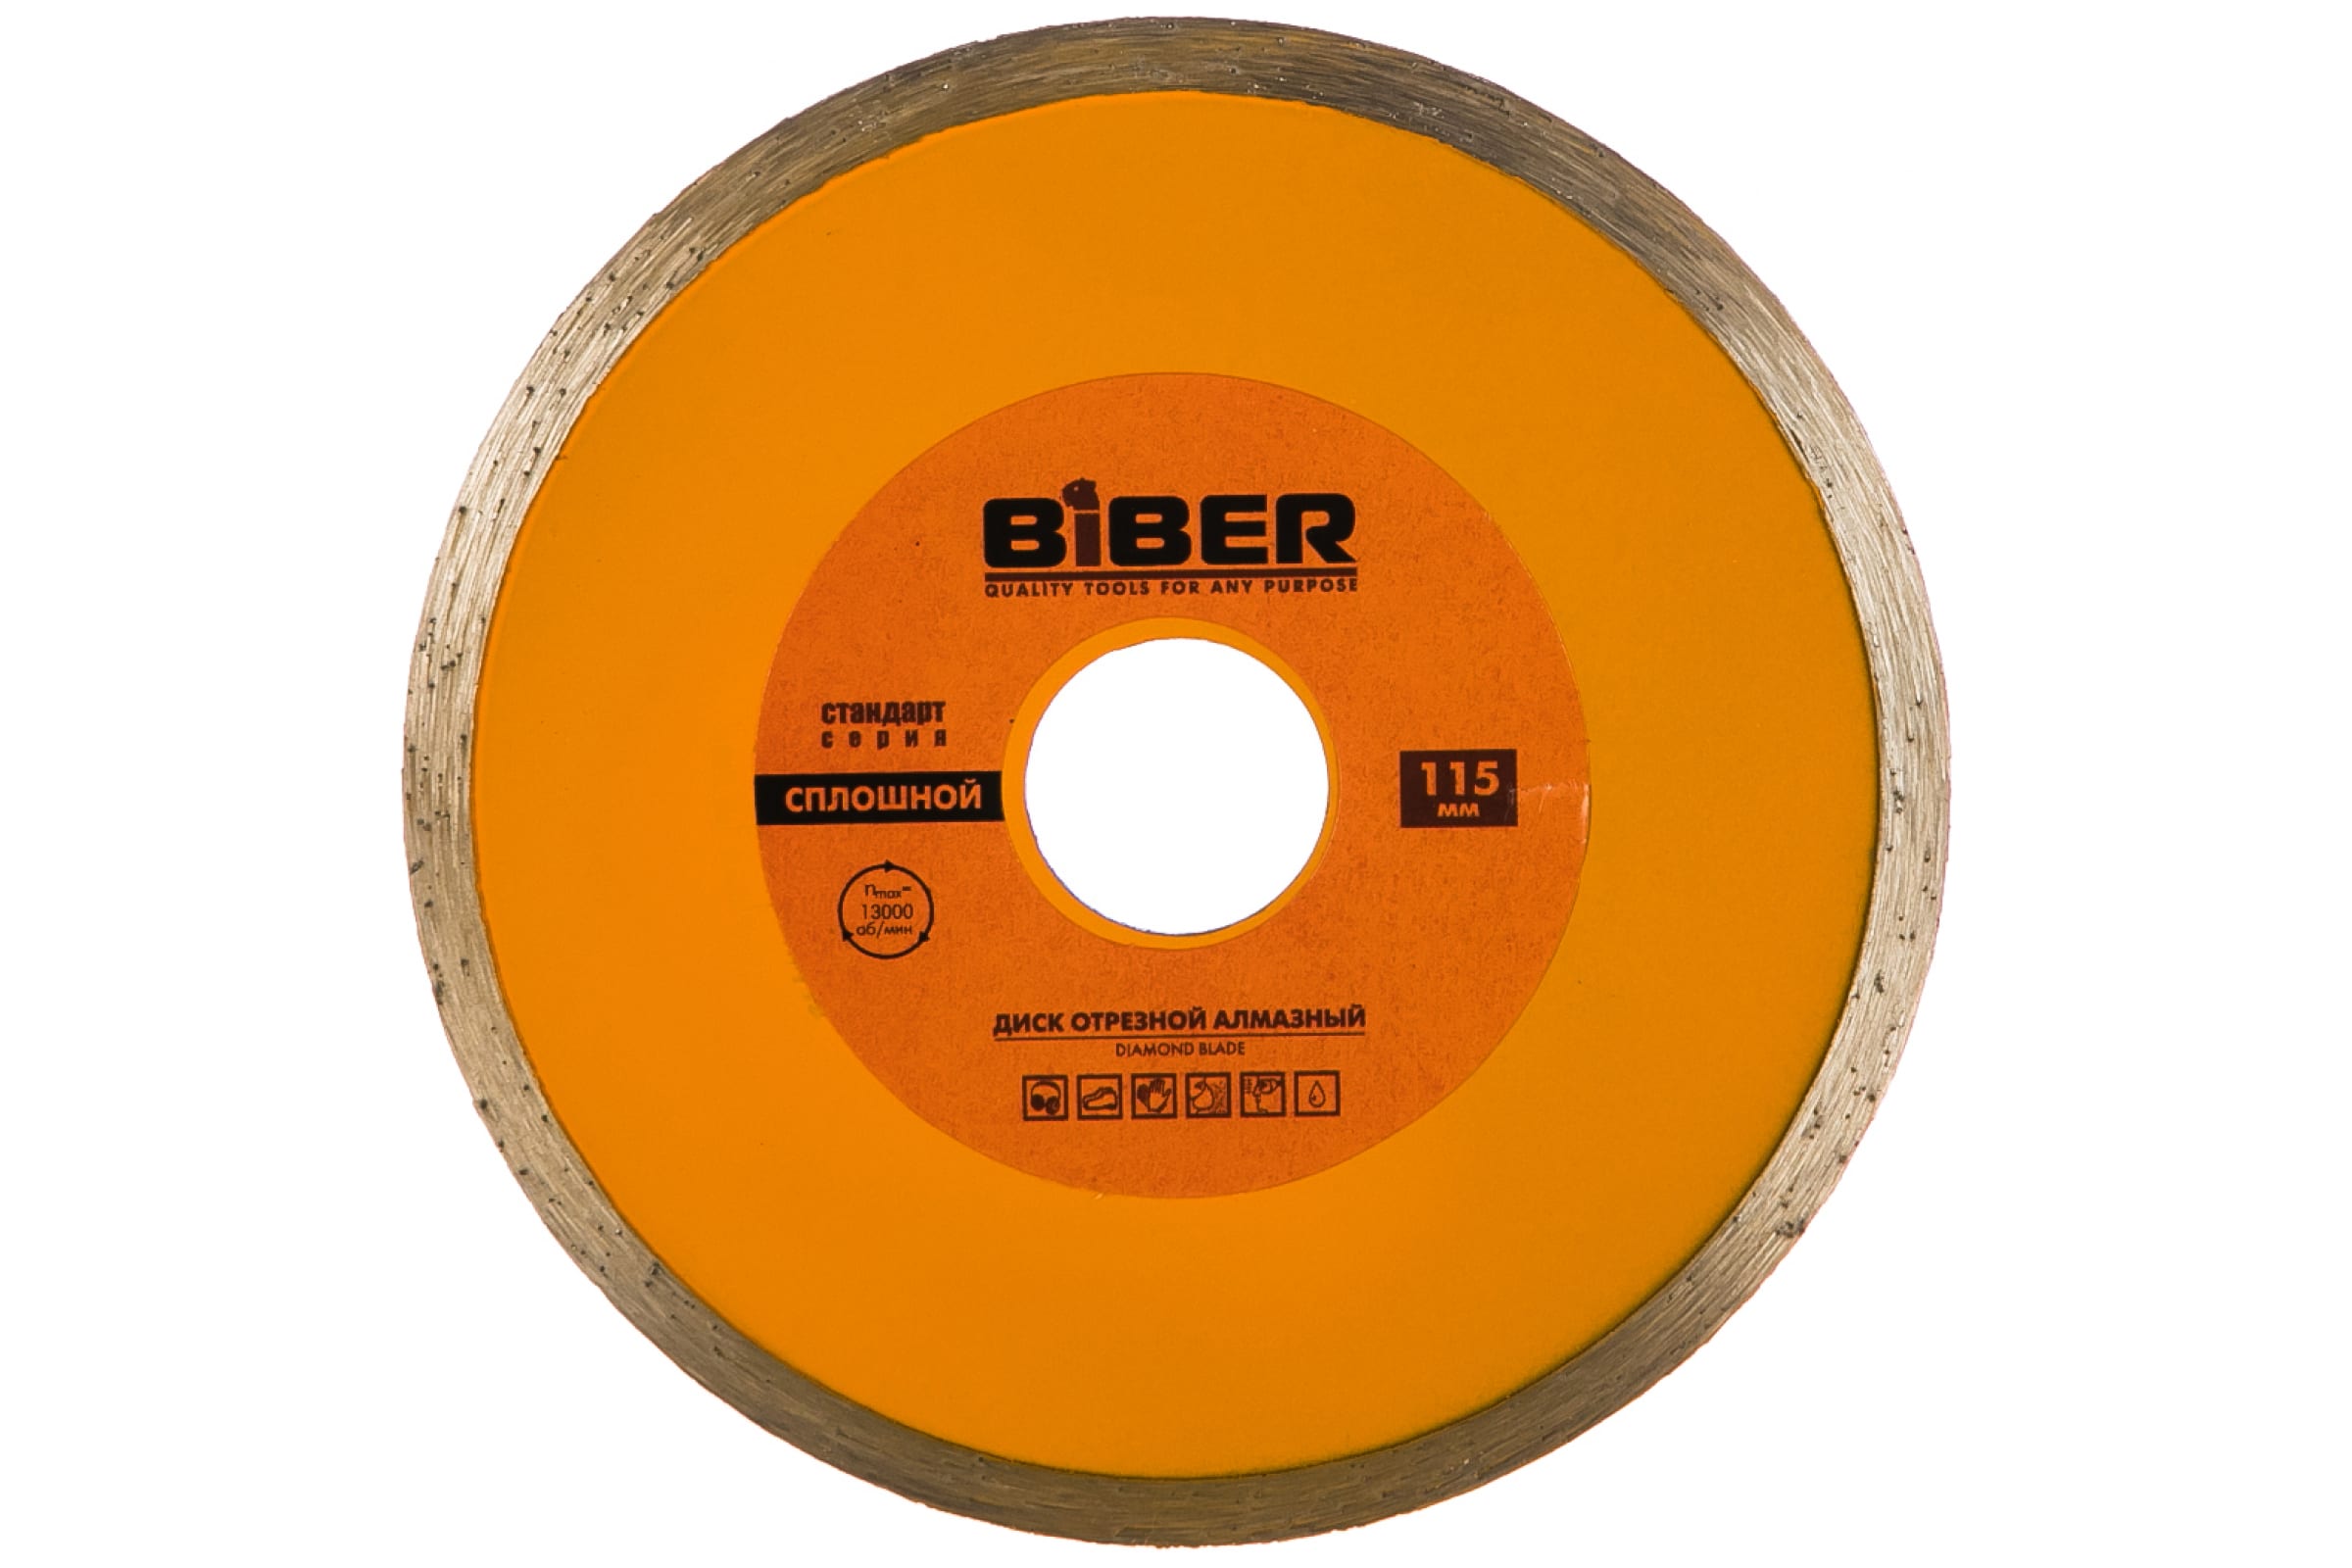 фото Biber диск алмазный сплошной стандарт 115мм 70222 тов-039543